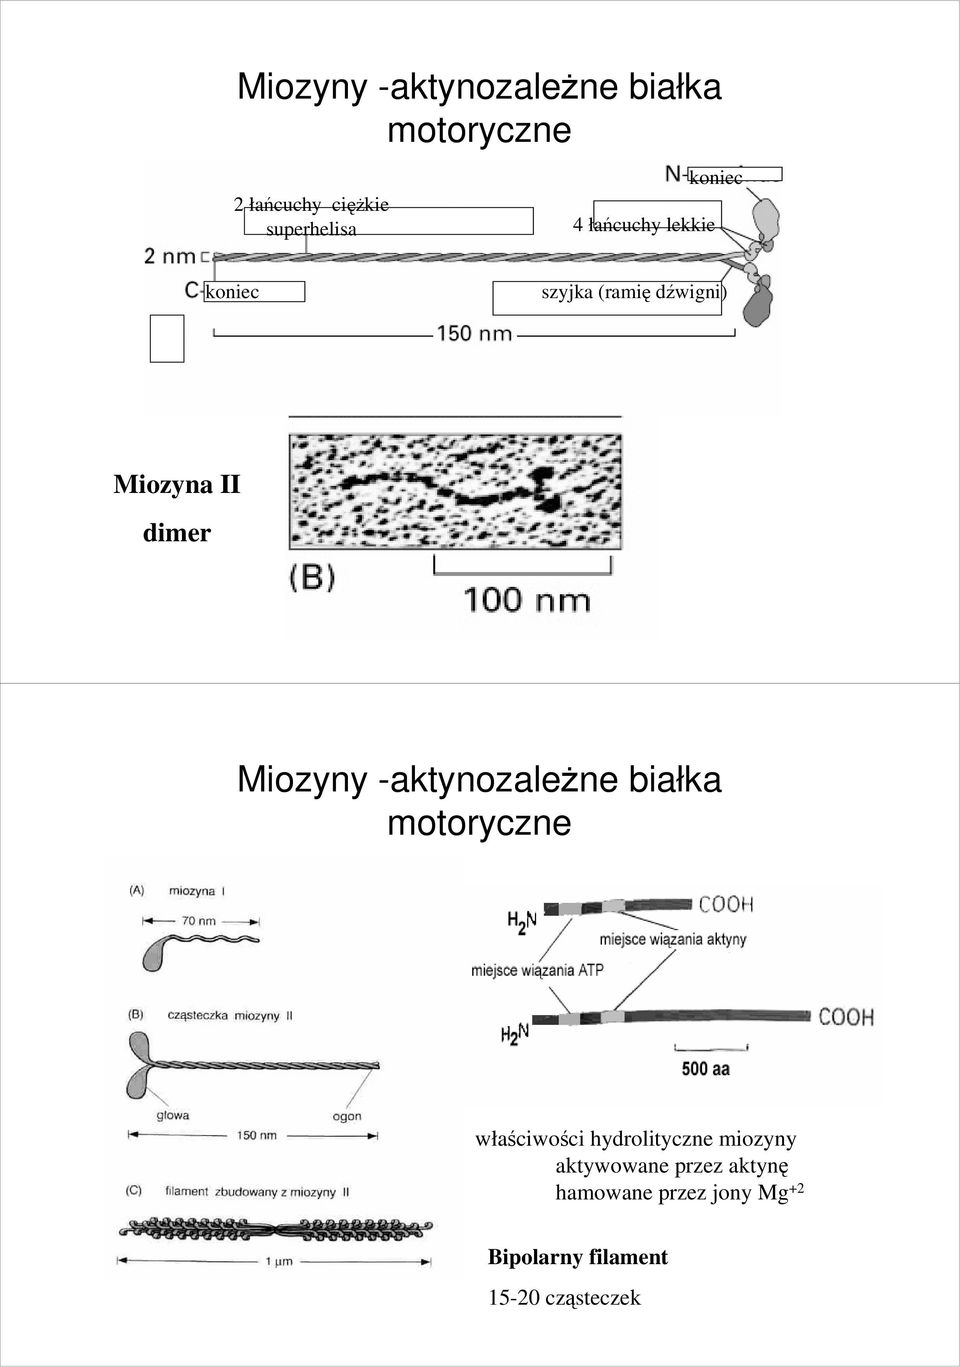 Miozyny -aktynozaleŝne białka motoryczne właściwości hydrolityczne miozyny